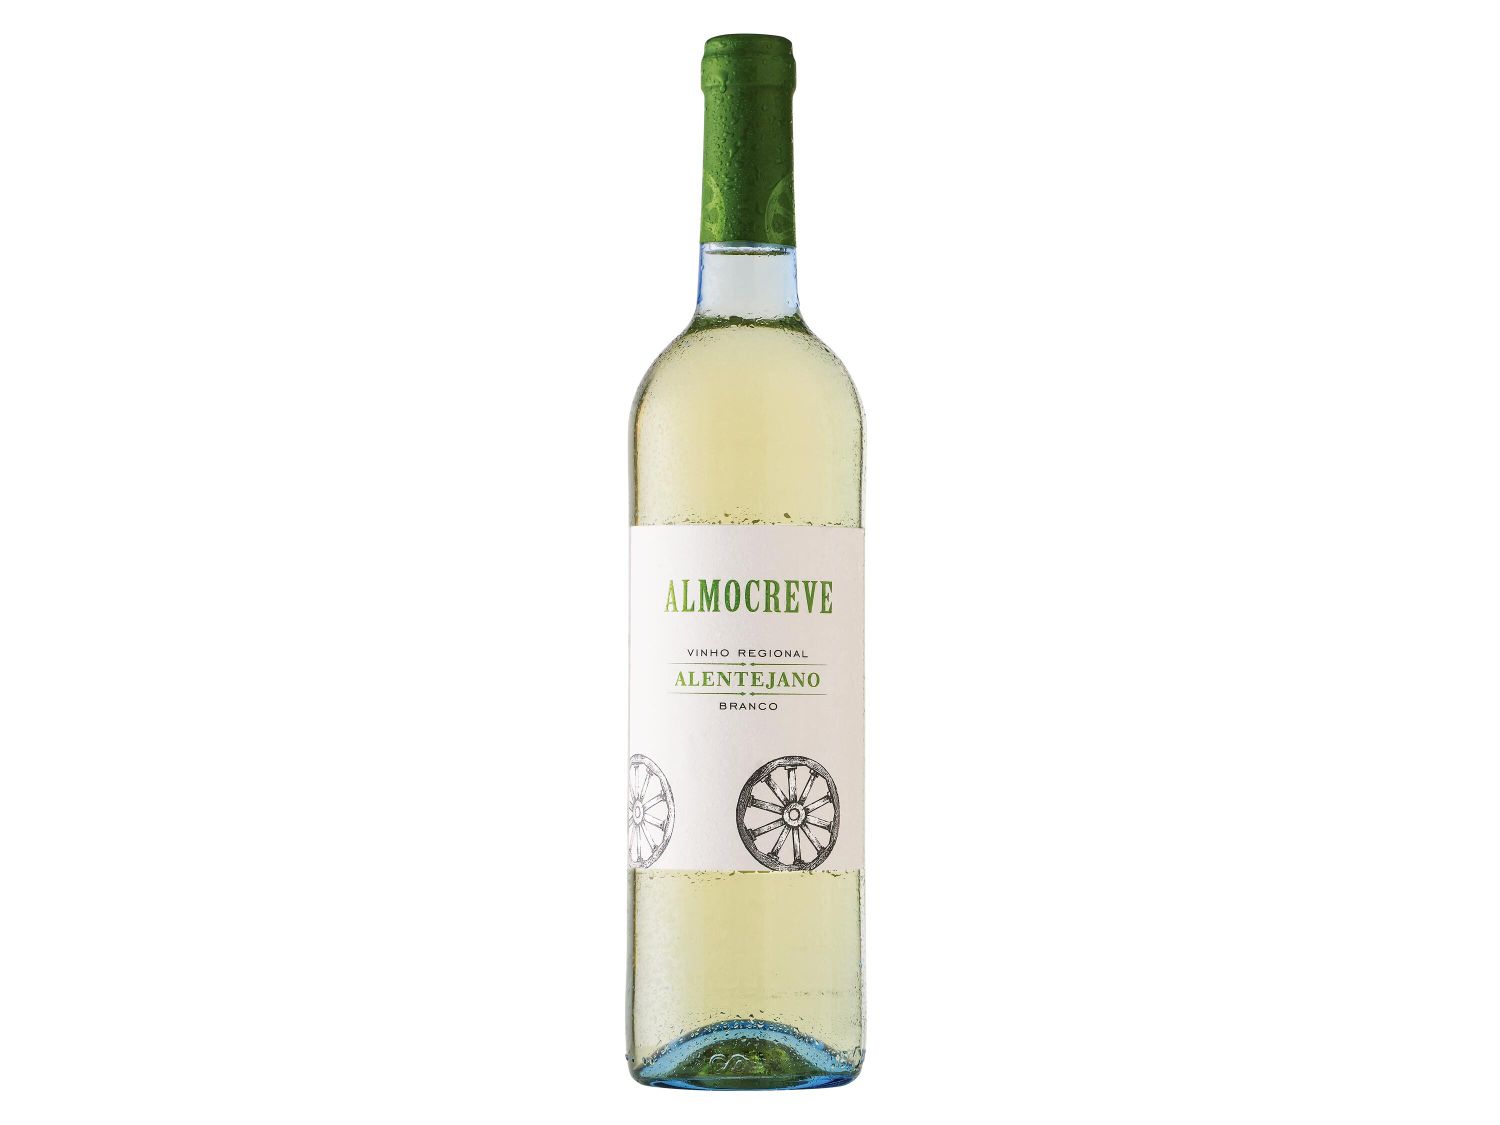 Almocreve® Vinho Branco Regional Alentejano - at Lidl